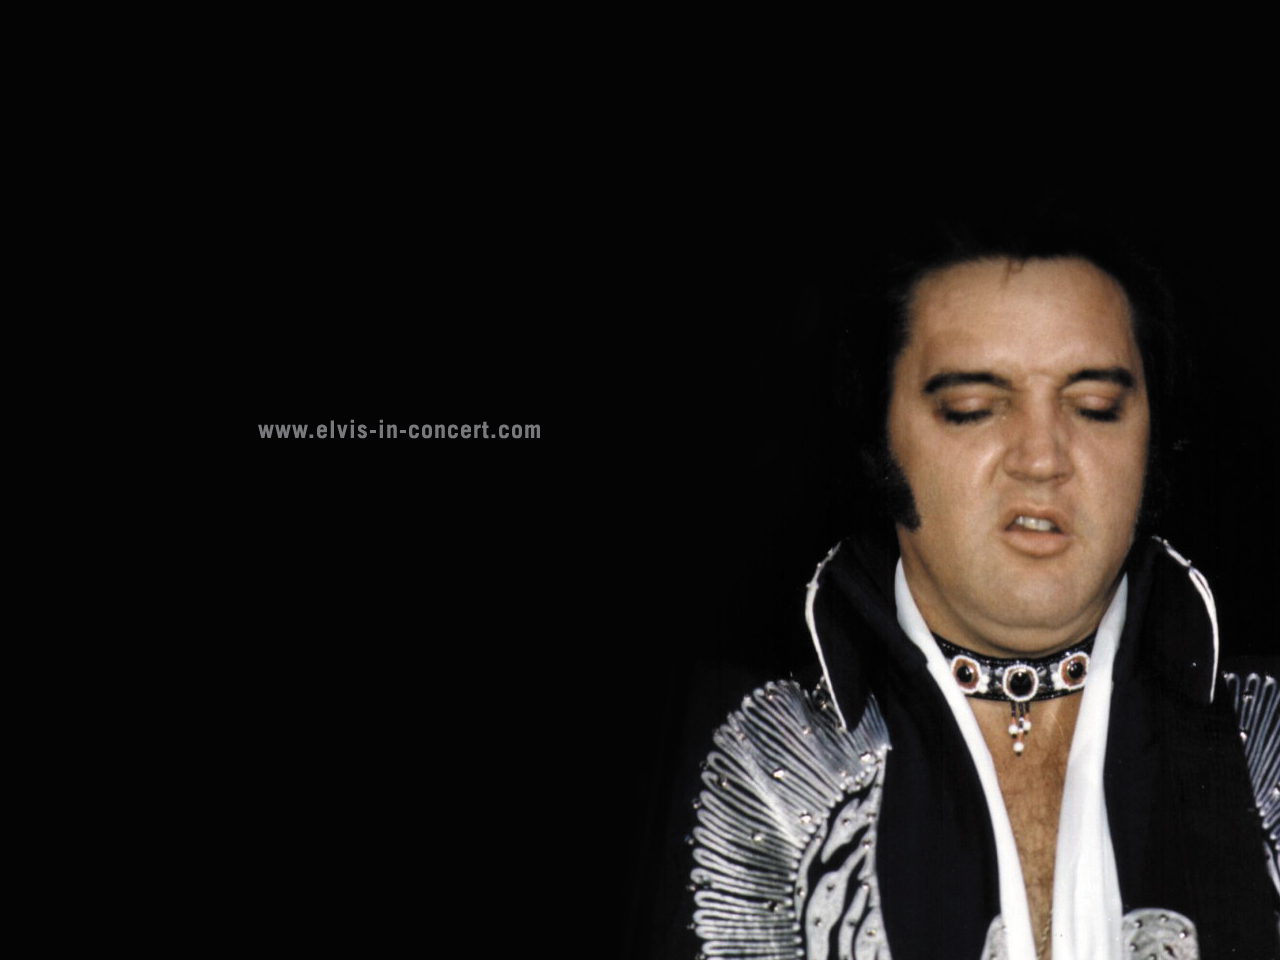 Elvis in concert.com